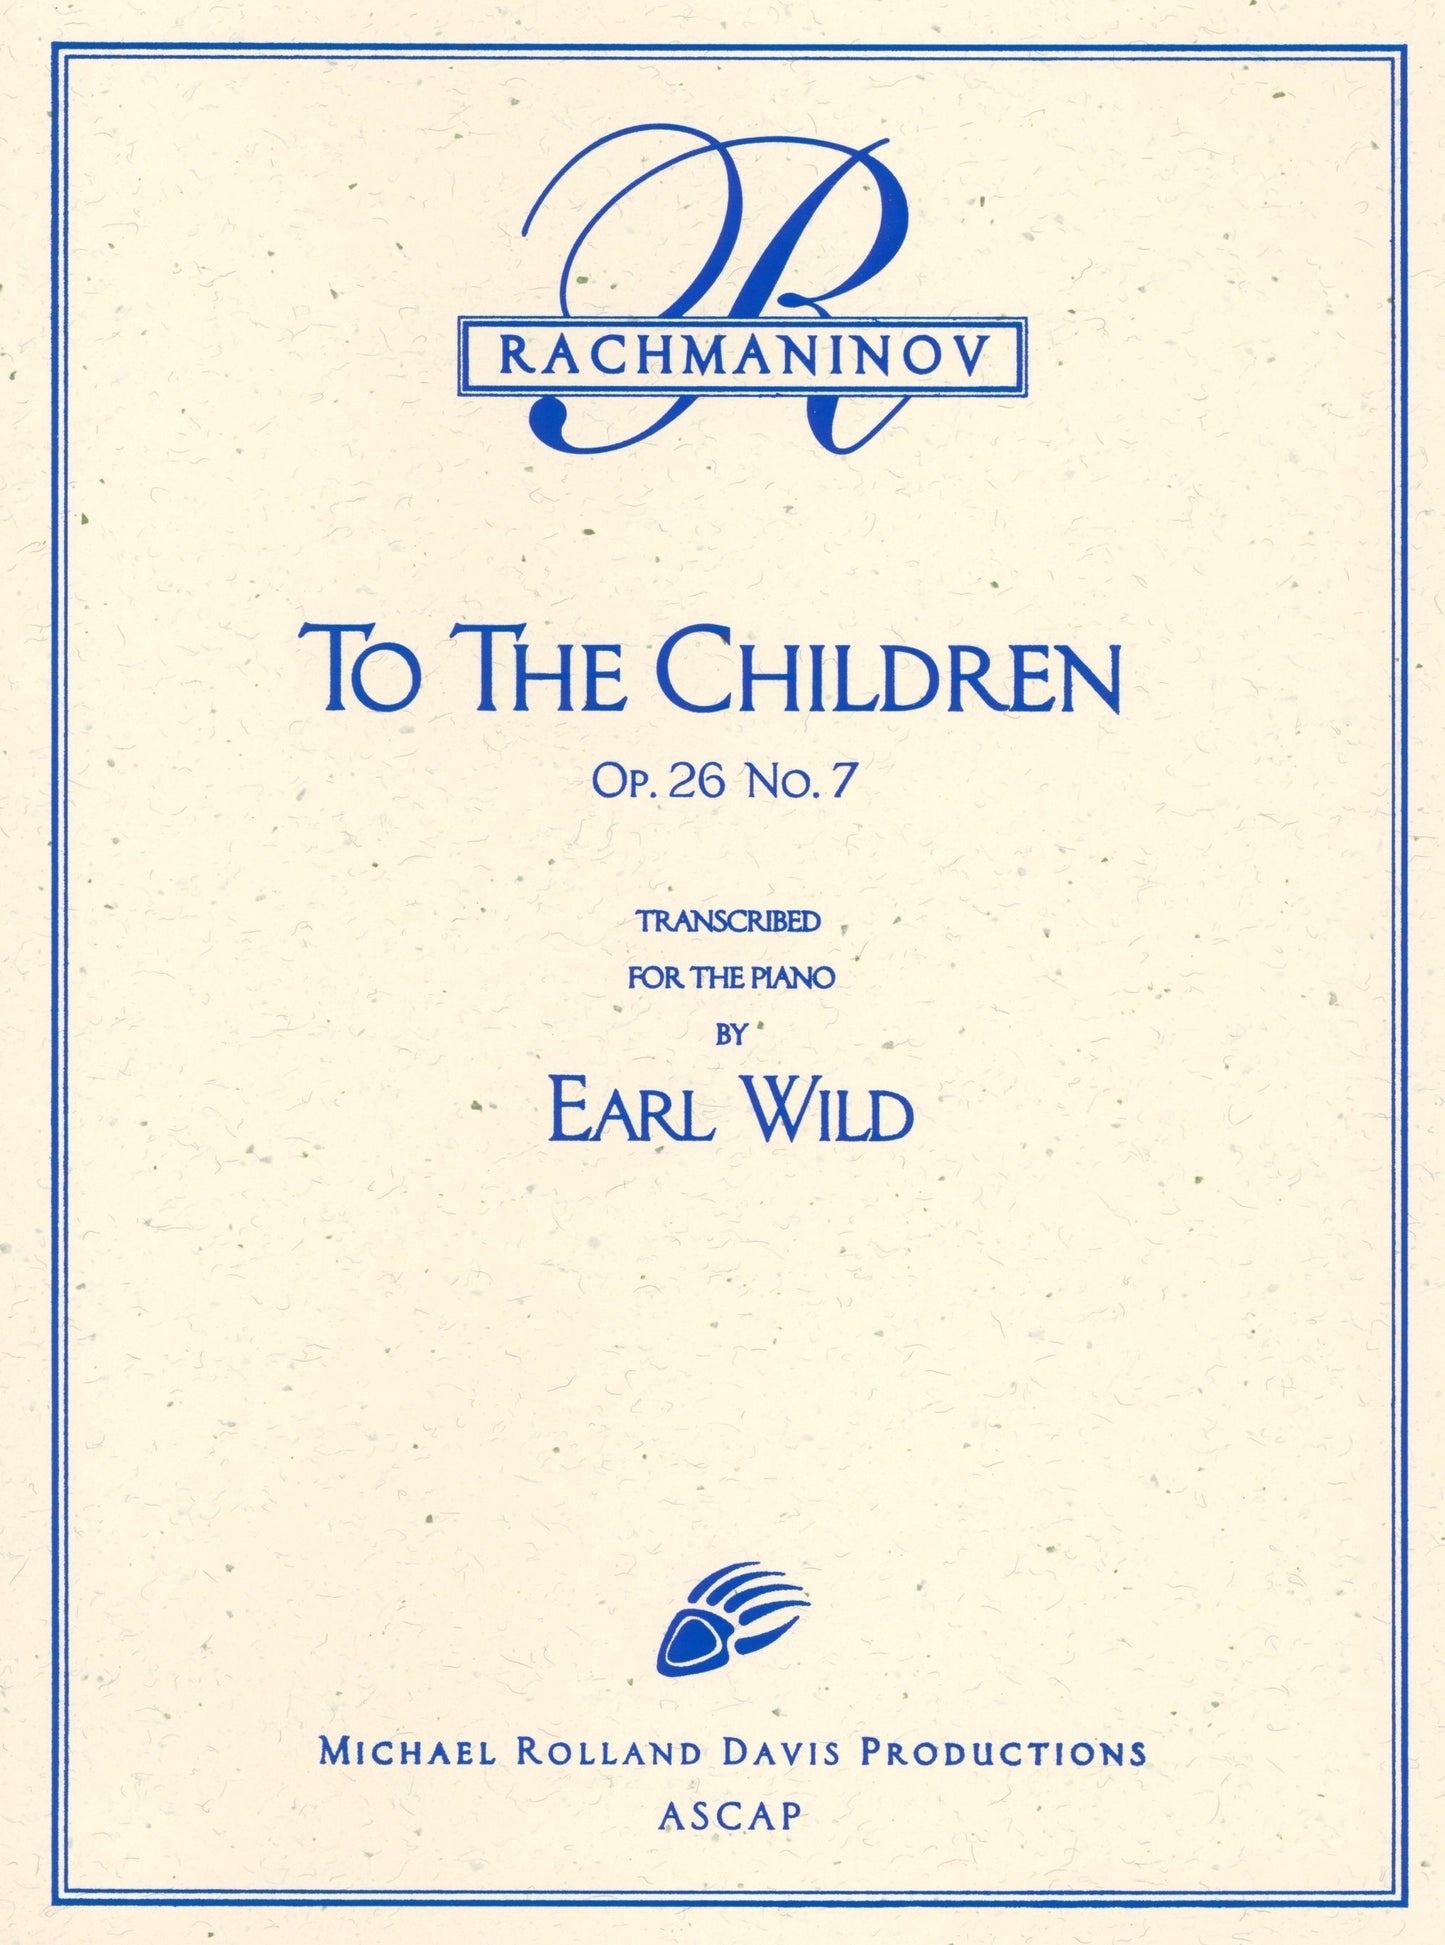 Rachmaninoff-Earl Wild: To the Children, Op. 26, No. 7